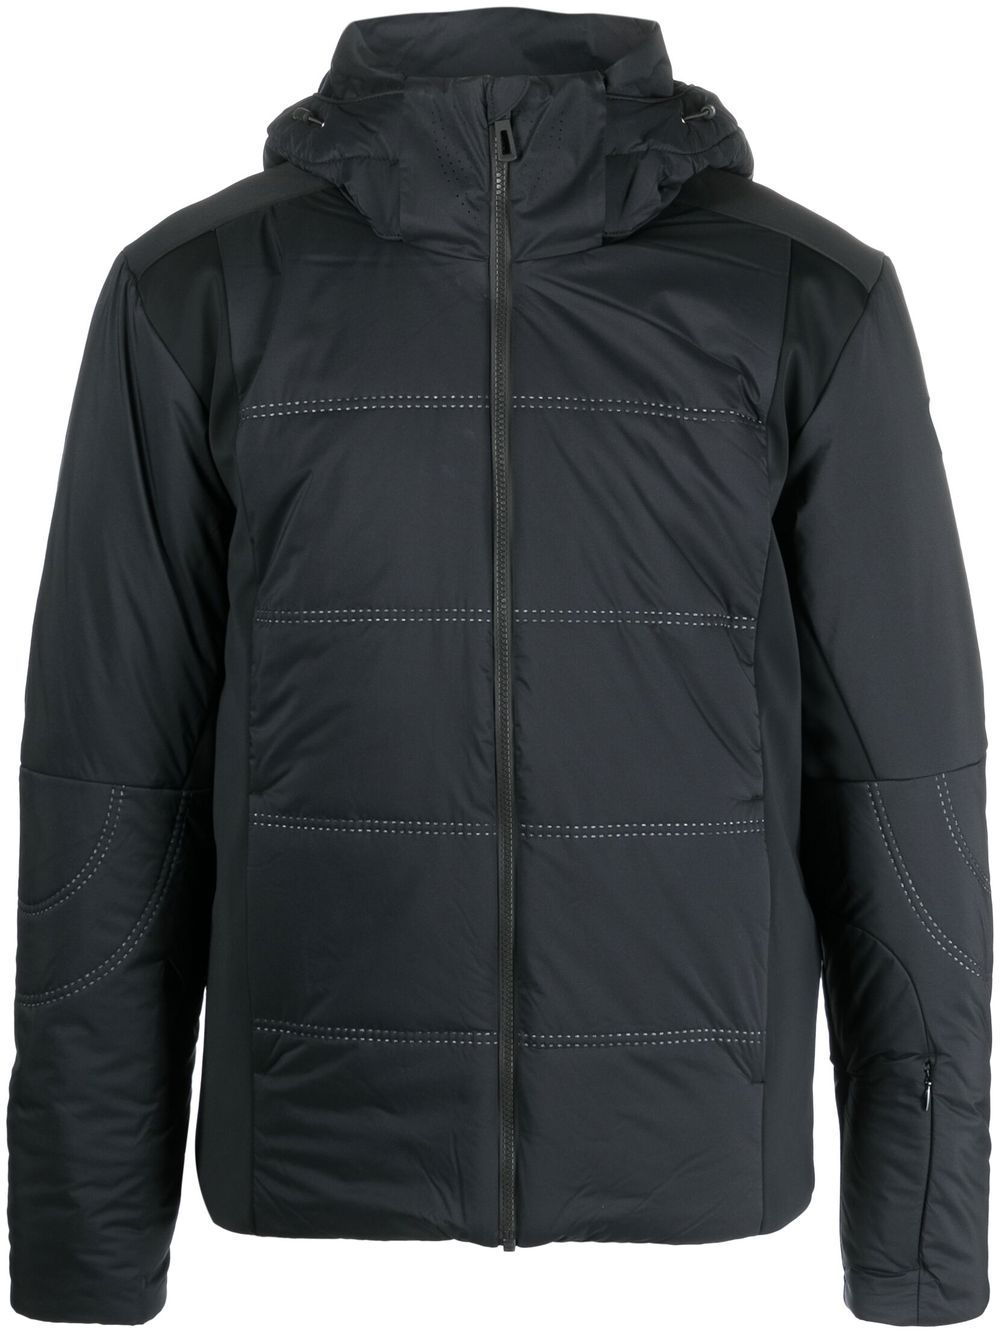 Rossignol Roc ski jacket - Black